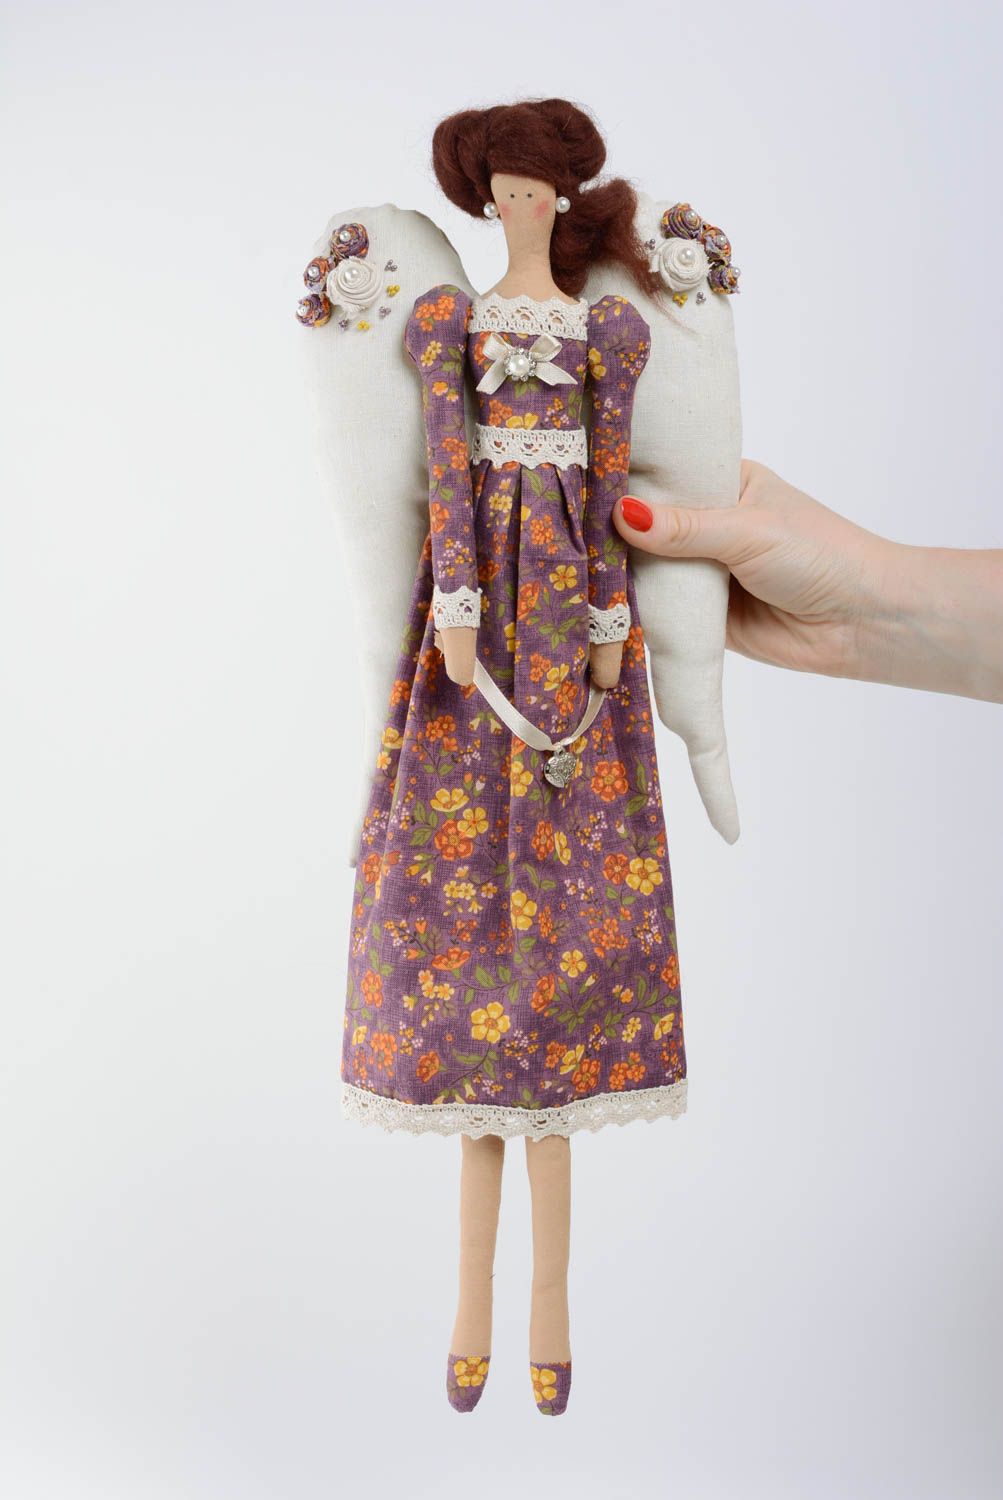 Handmade schöne Puppe aus Stoff Baumwolle für Kinder Engel Mädchen  foto 4